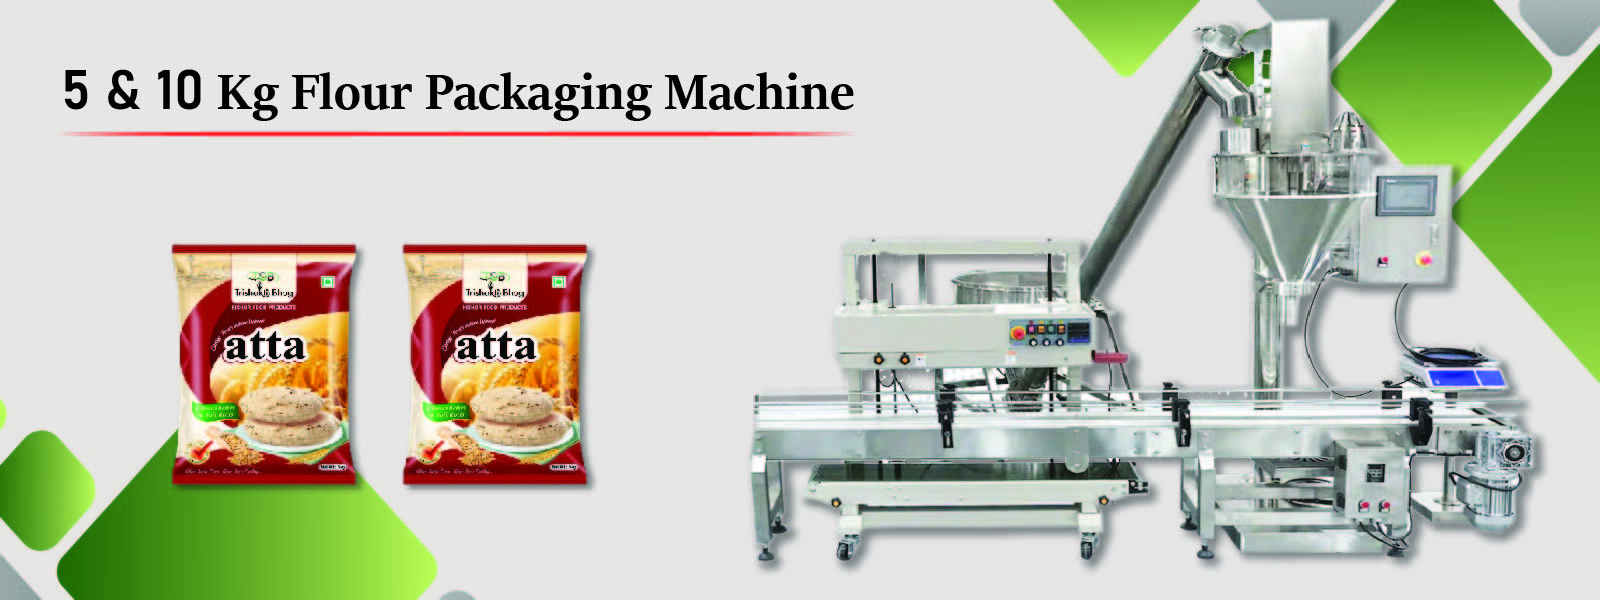 5 & 10 kg flour packaging machine